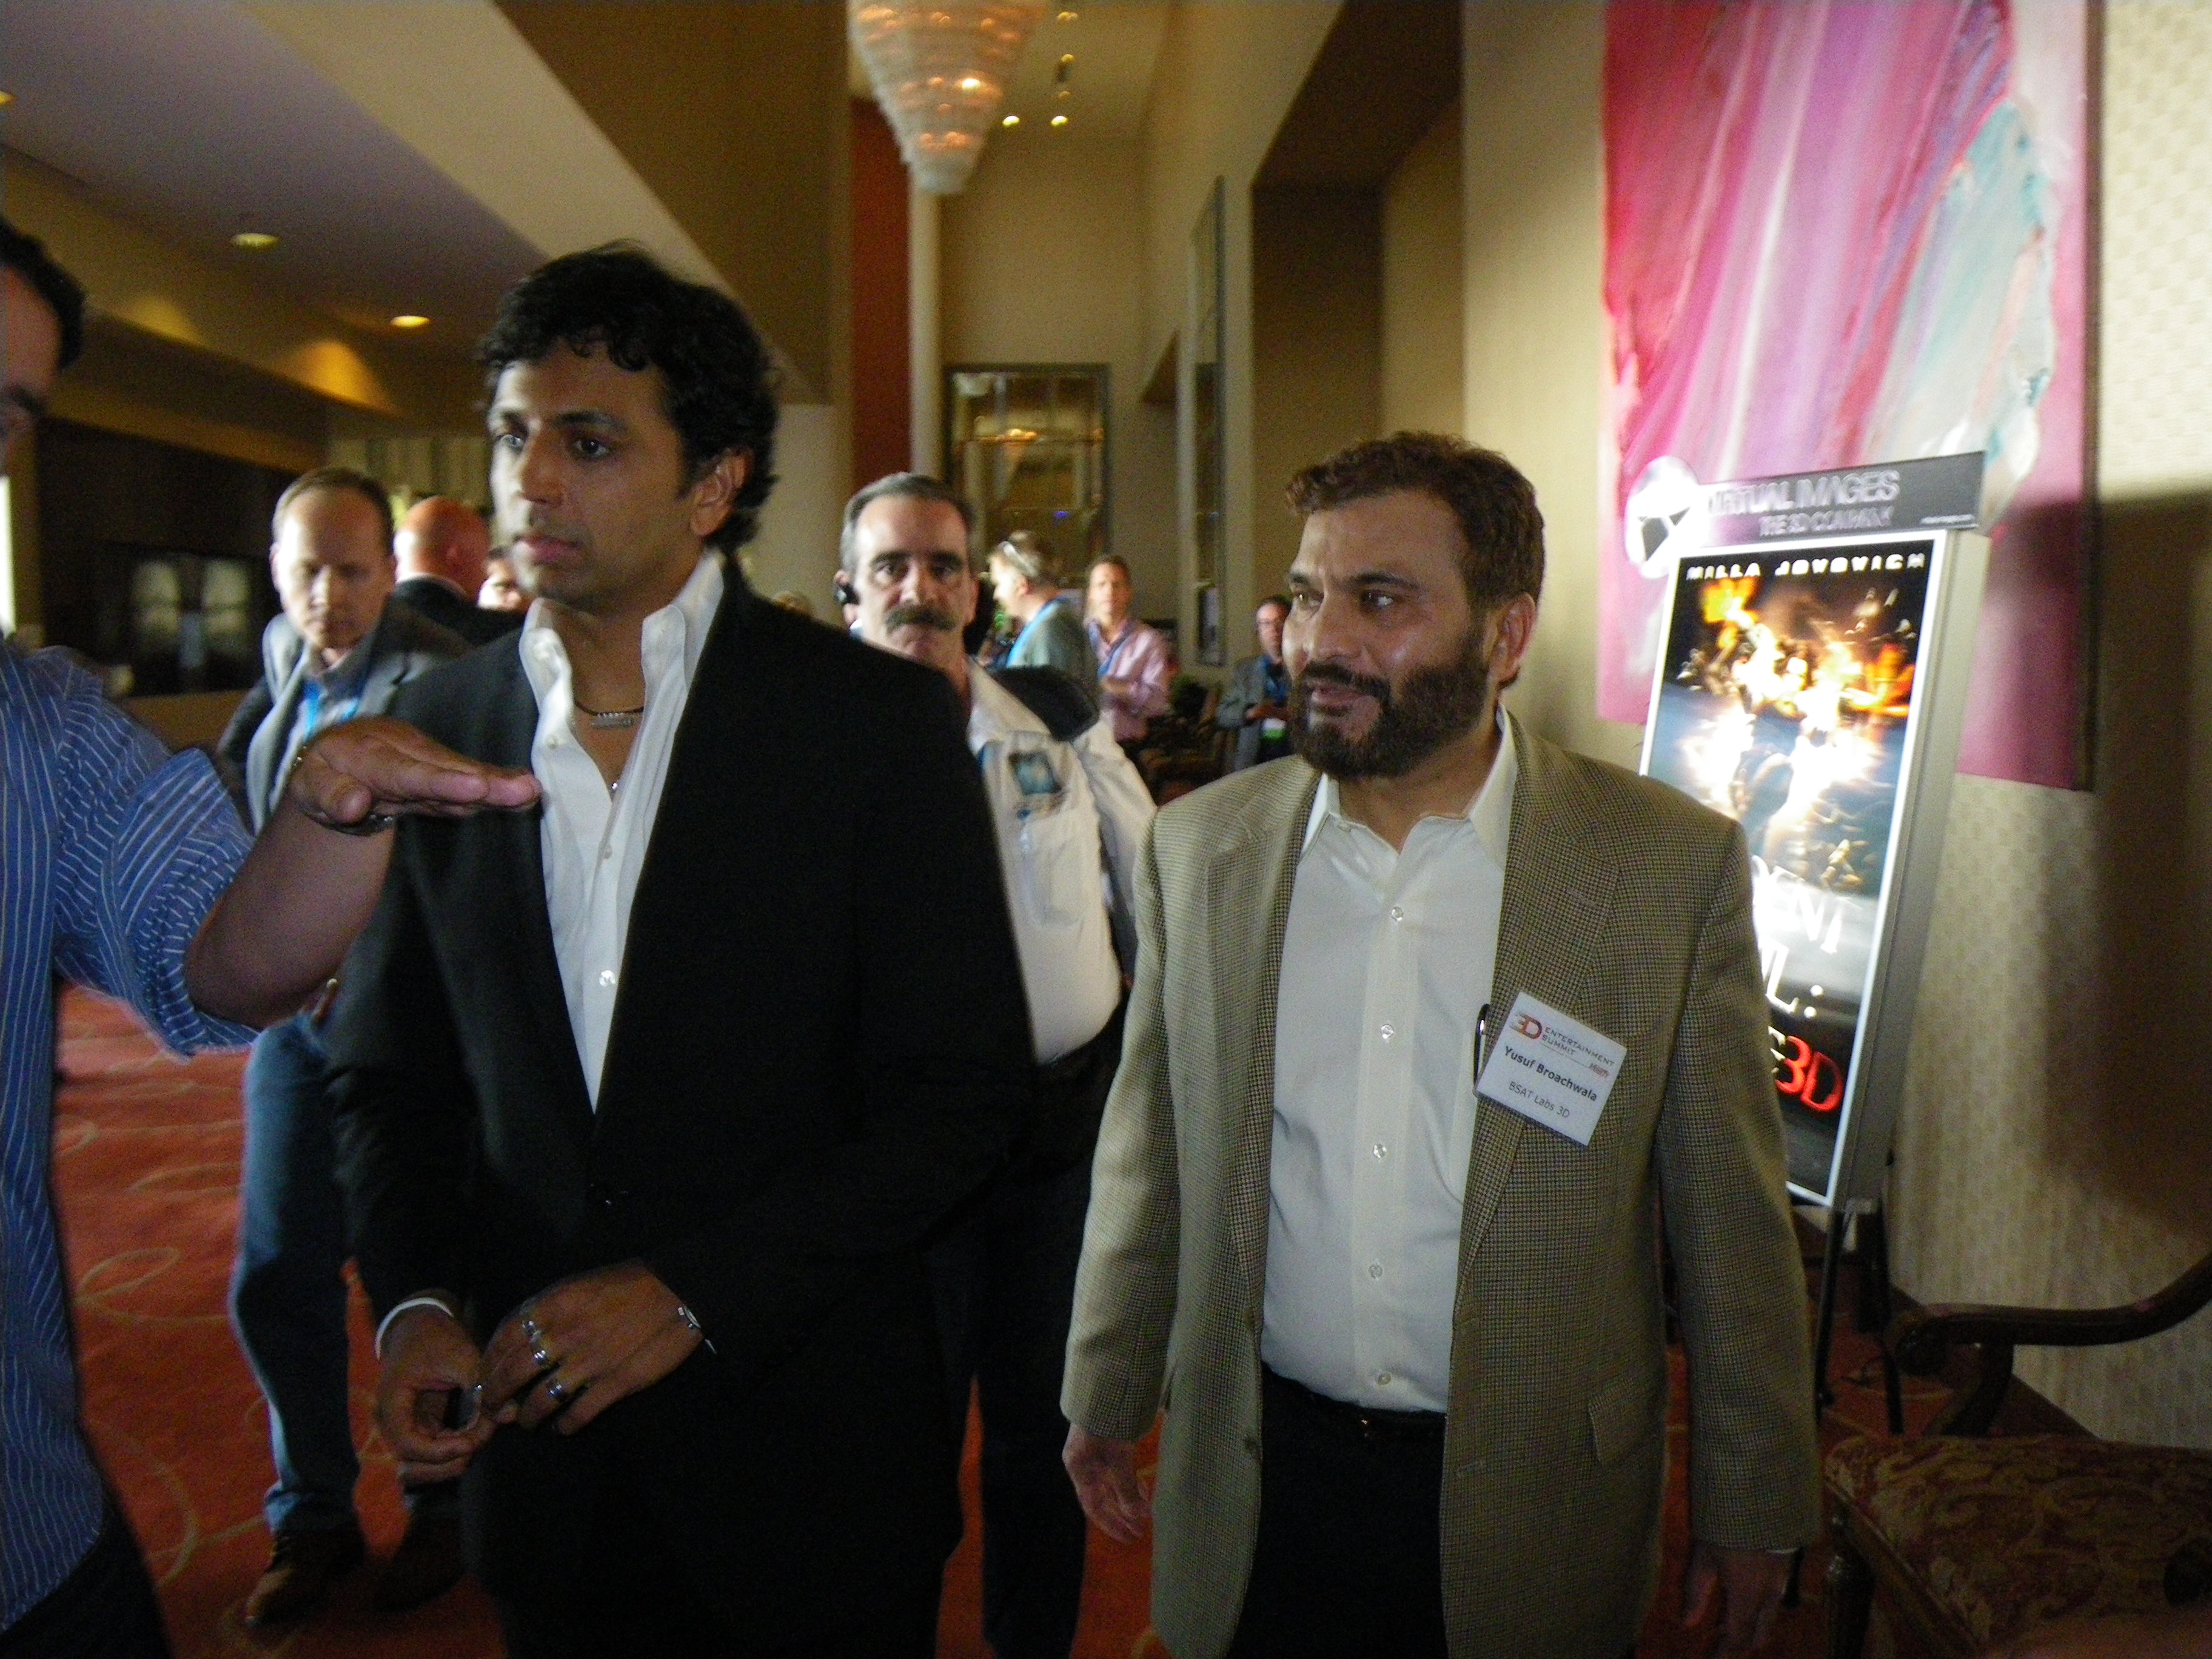 Yusuf Baruch with M. Night Shyamalan at 3D Film Summit